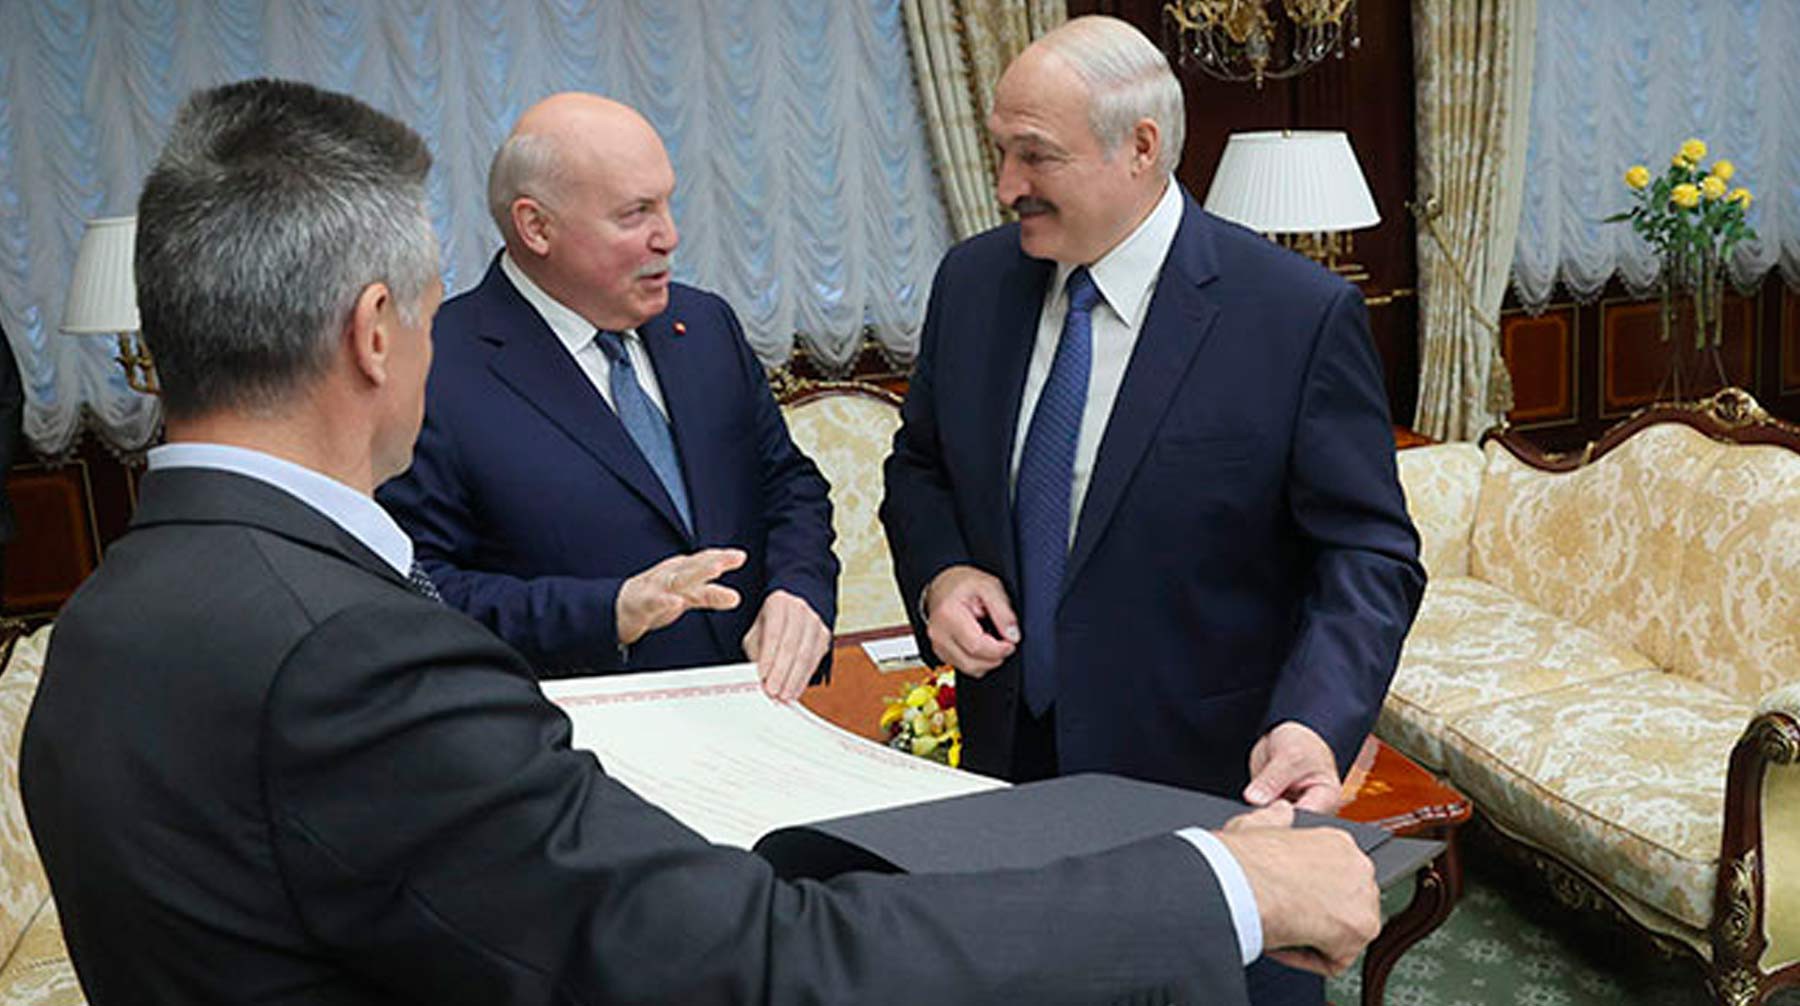 Dailystorm - Мезенцев подарил Лукашенко карту с белорусскими землями в составе Российской империи